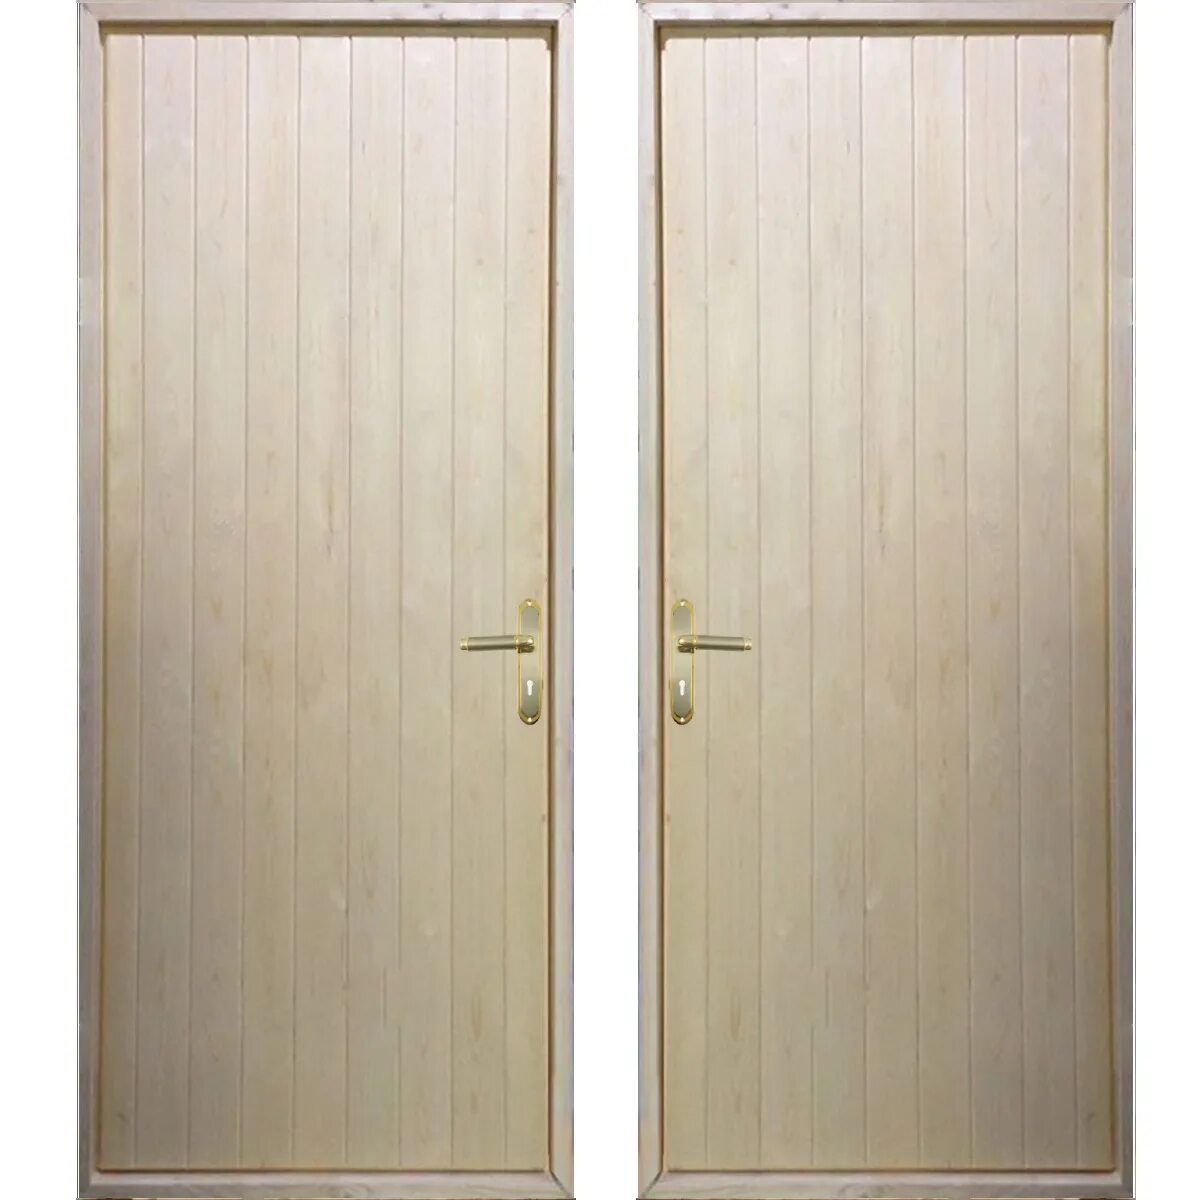 Щитовая дверь. Дверь щитовая деревянная. Щитовая входная дверь. Двери щитовые деревянные.